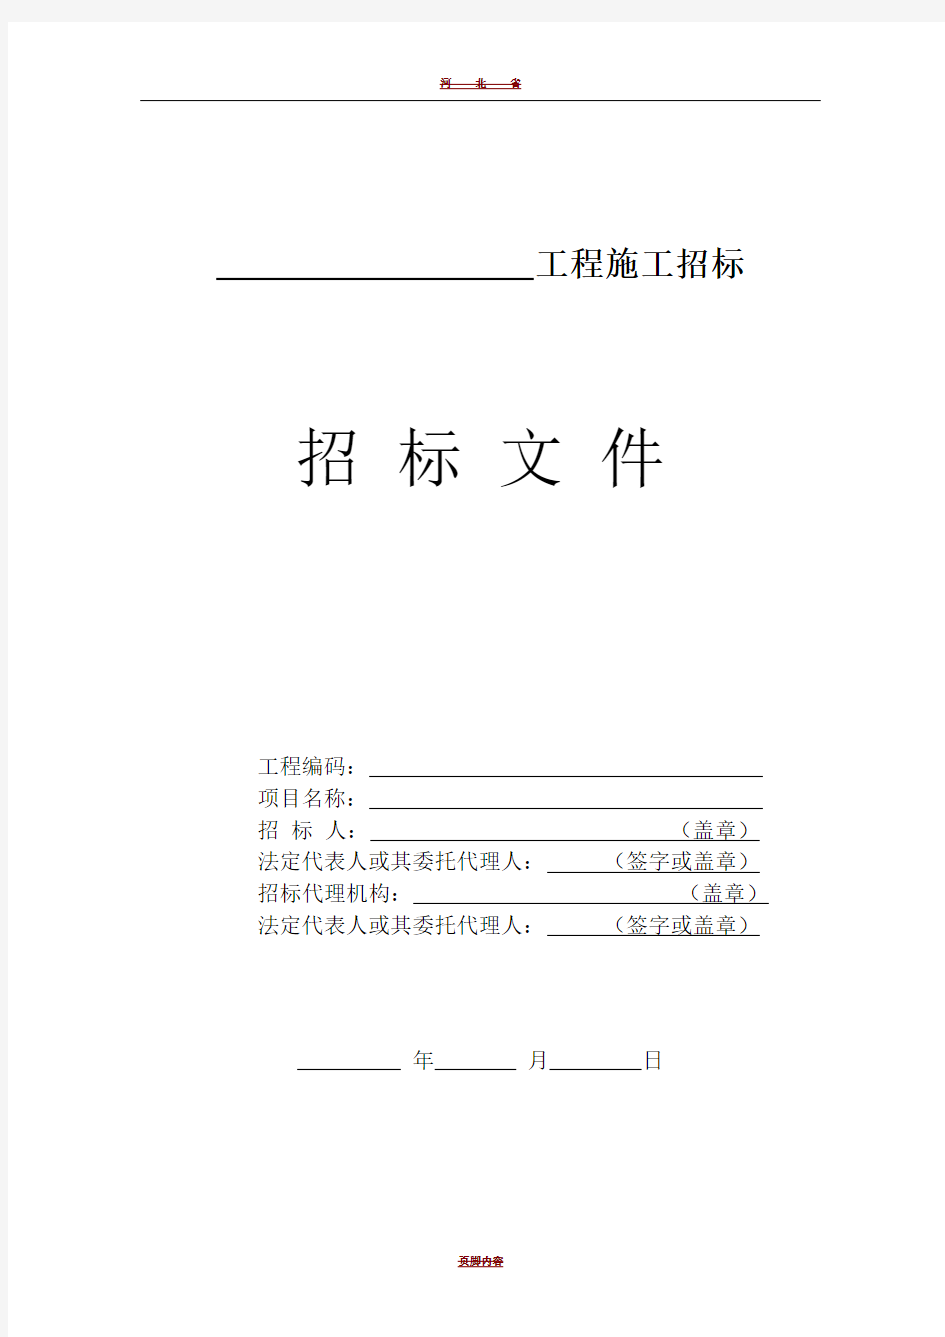 河北省房屋建筑和市政基础设施工程施工招标文件示范文本(公开招标)(2016版)